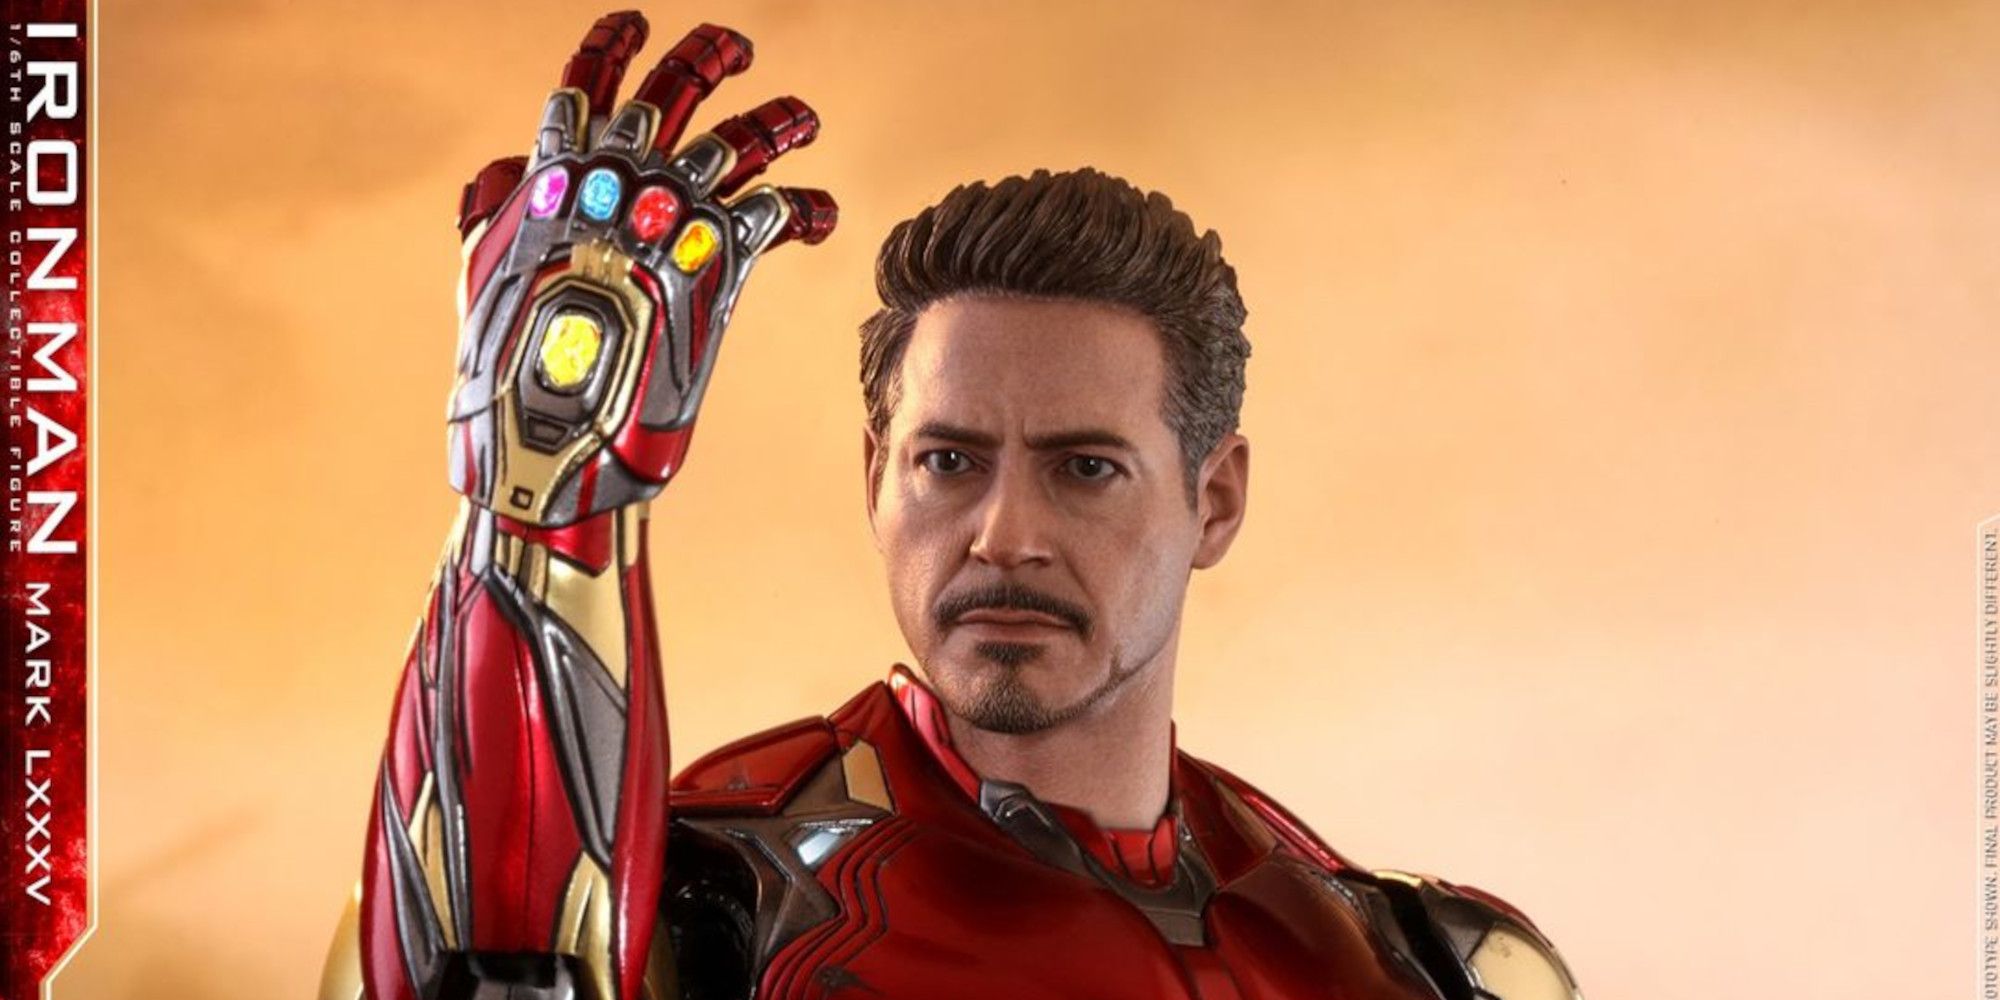 Hot Toys Tony Stark sculpt from Avengers Endgame header